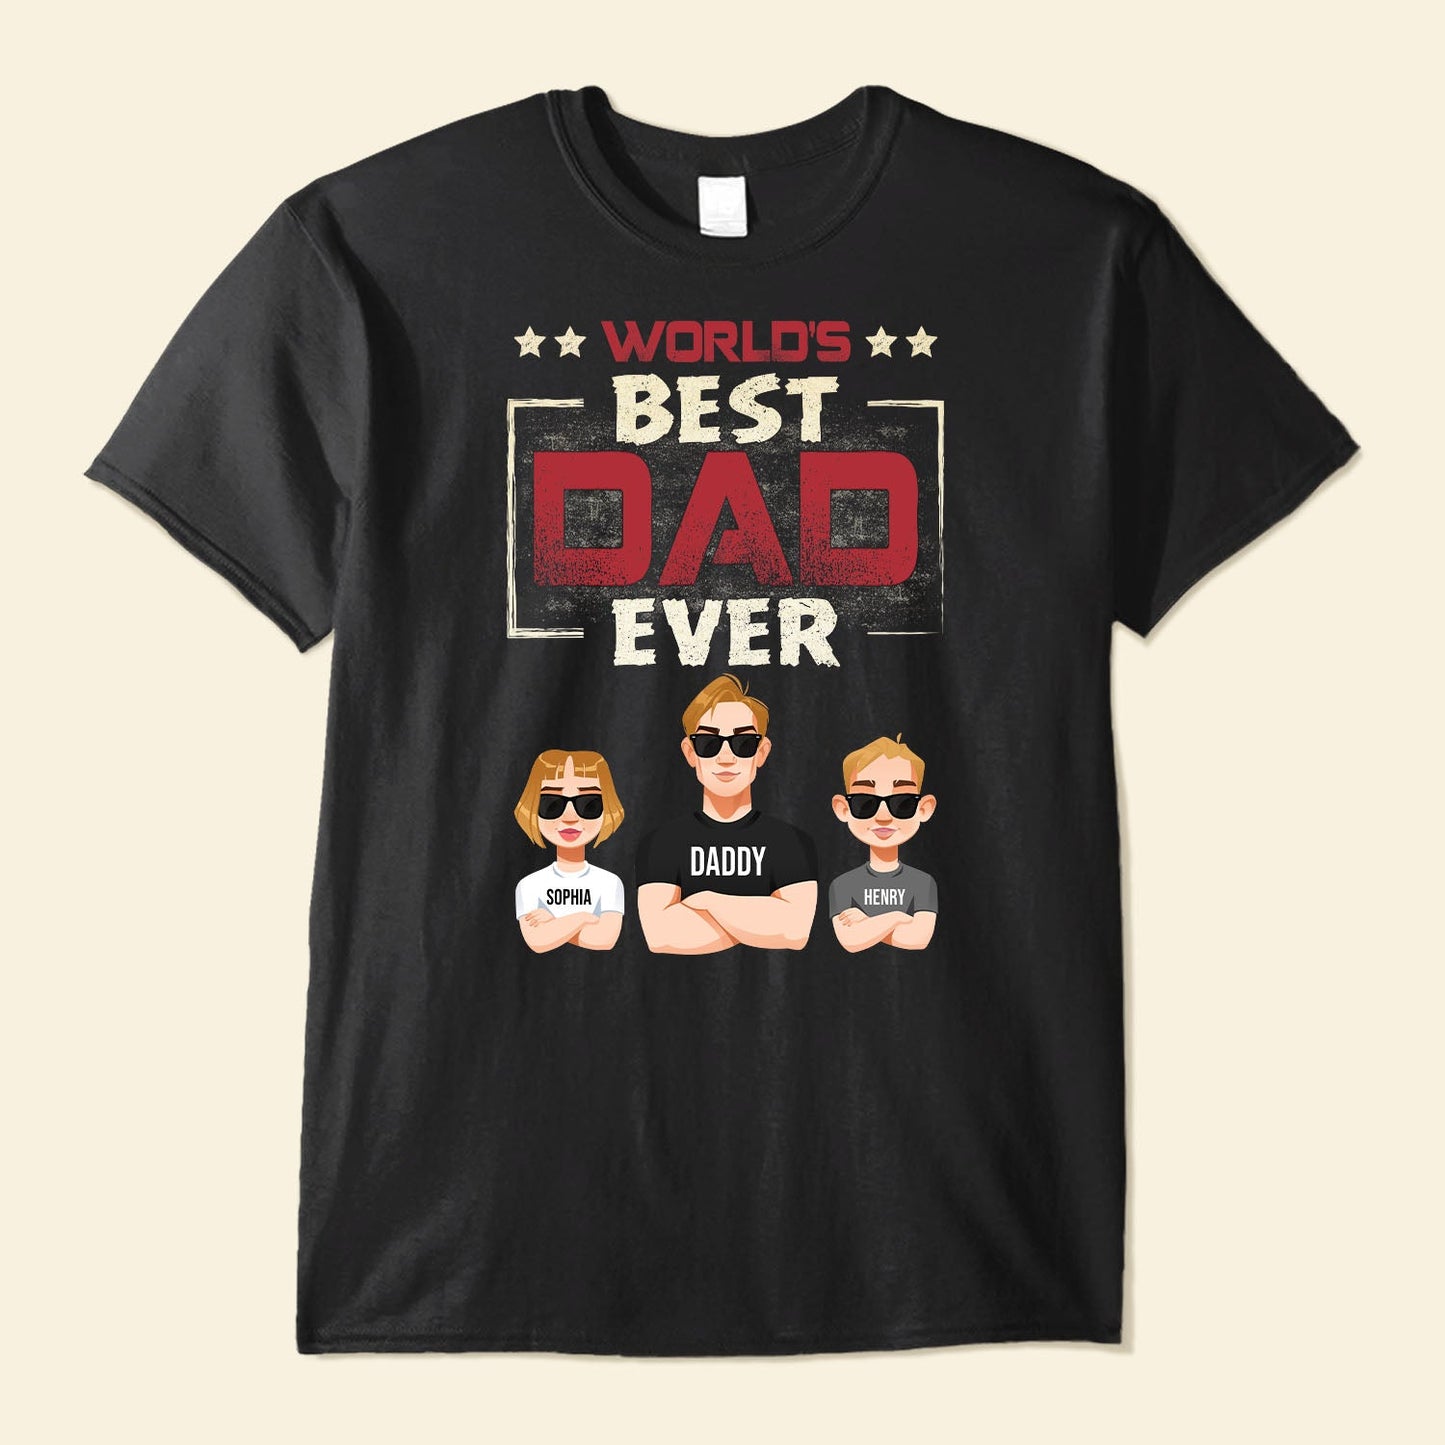 World's Best Dad Ever (Dark Version) - Personalized Shirt